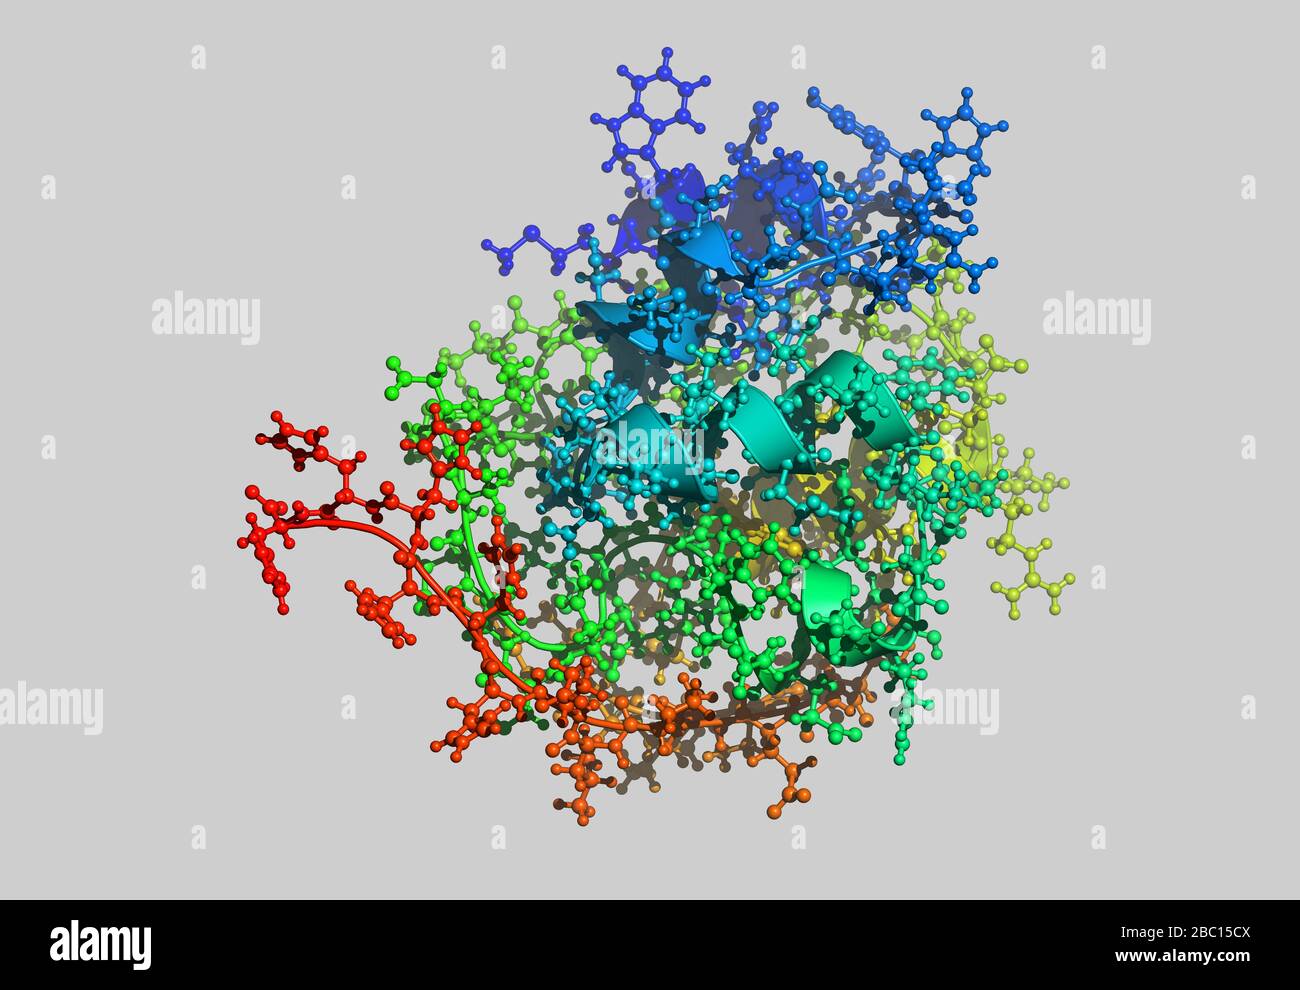 Molekulares Proteinmodell mit Atomen Stockfoto